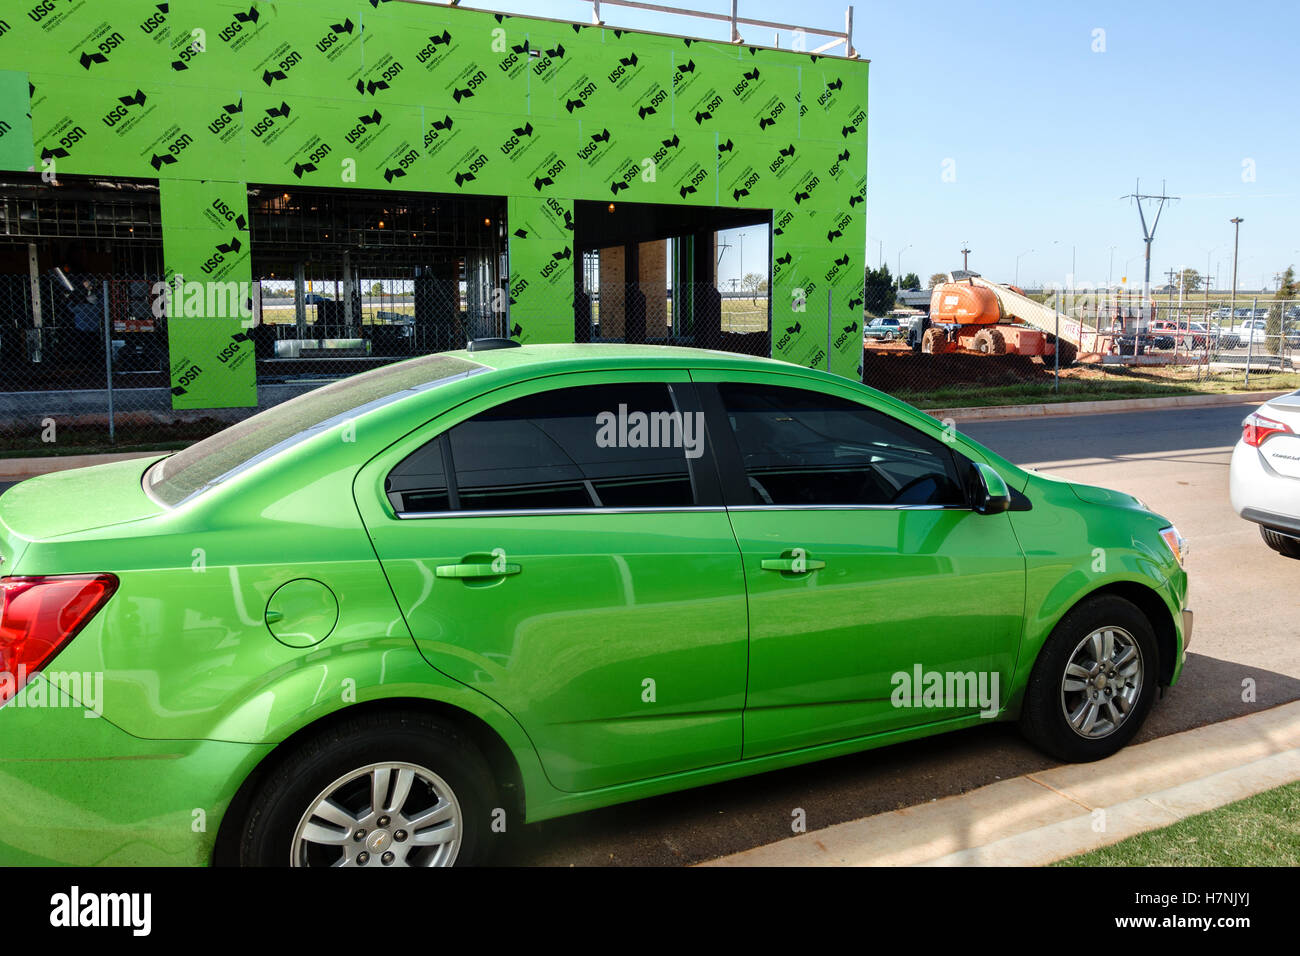 Ungewöhnliche Zusammentreffen von Lime Green passende Farben in einem Automobil und ein im Bau befindliches Gebäude. Oklahoma, USA. Stockfoto